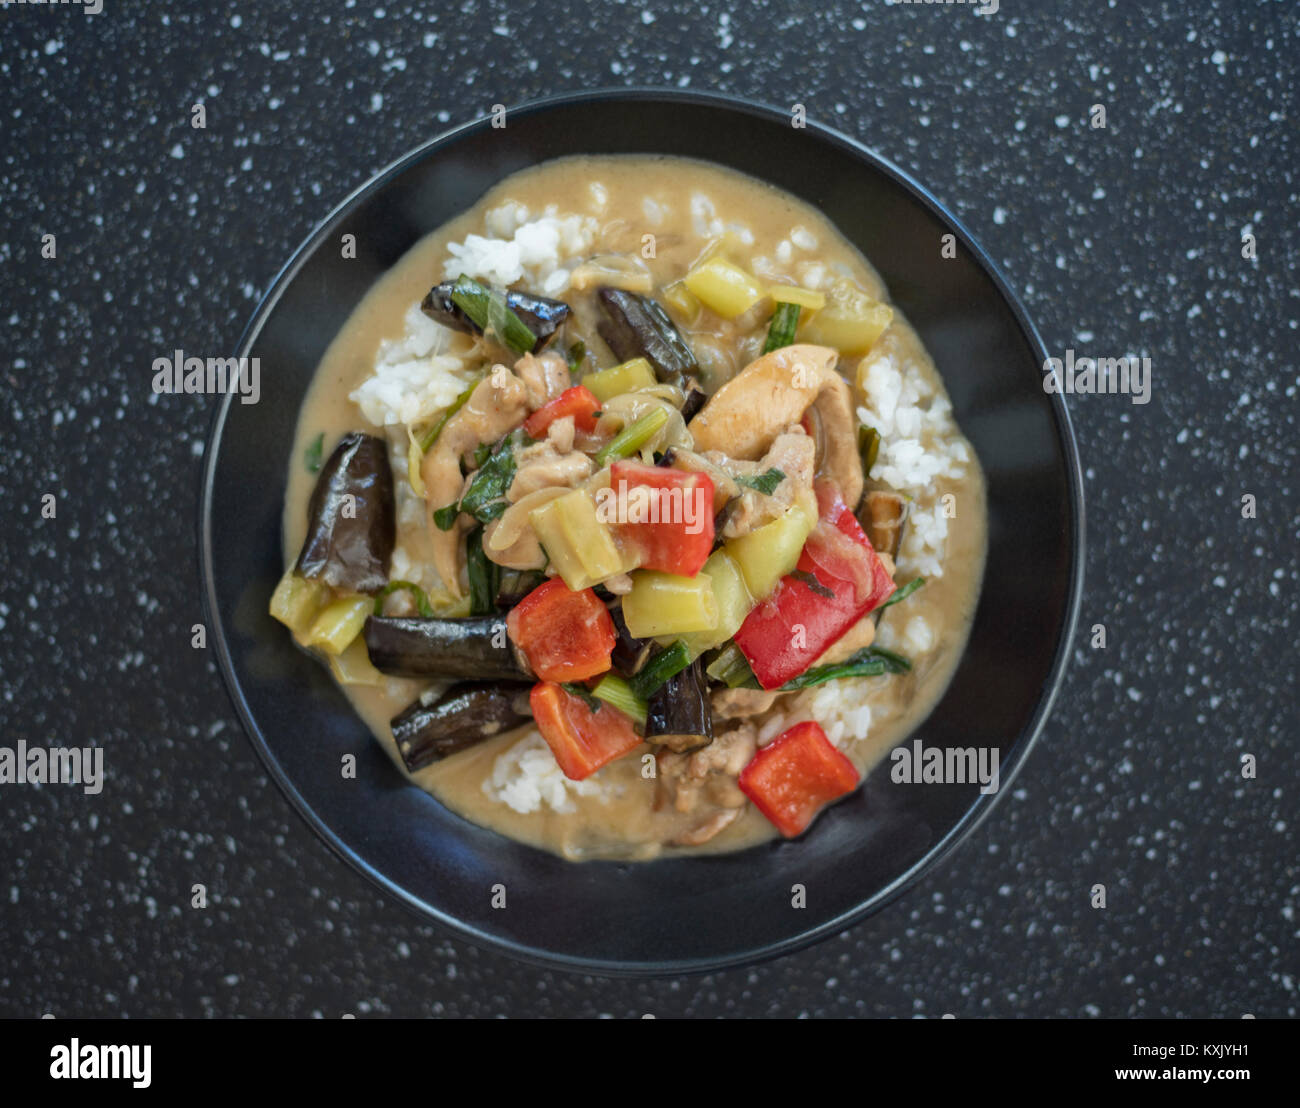 Thailändisches Grünes Huhn Curry auf schwarze Platte Stockfotografie ...